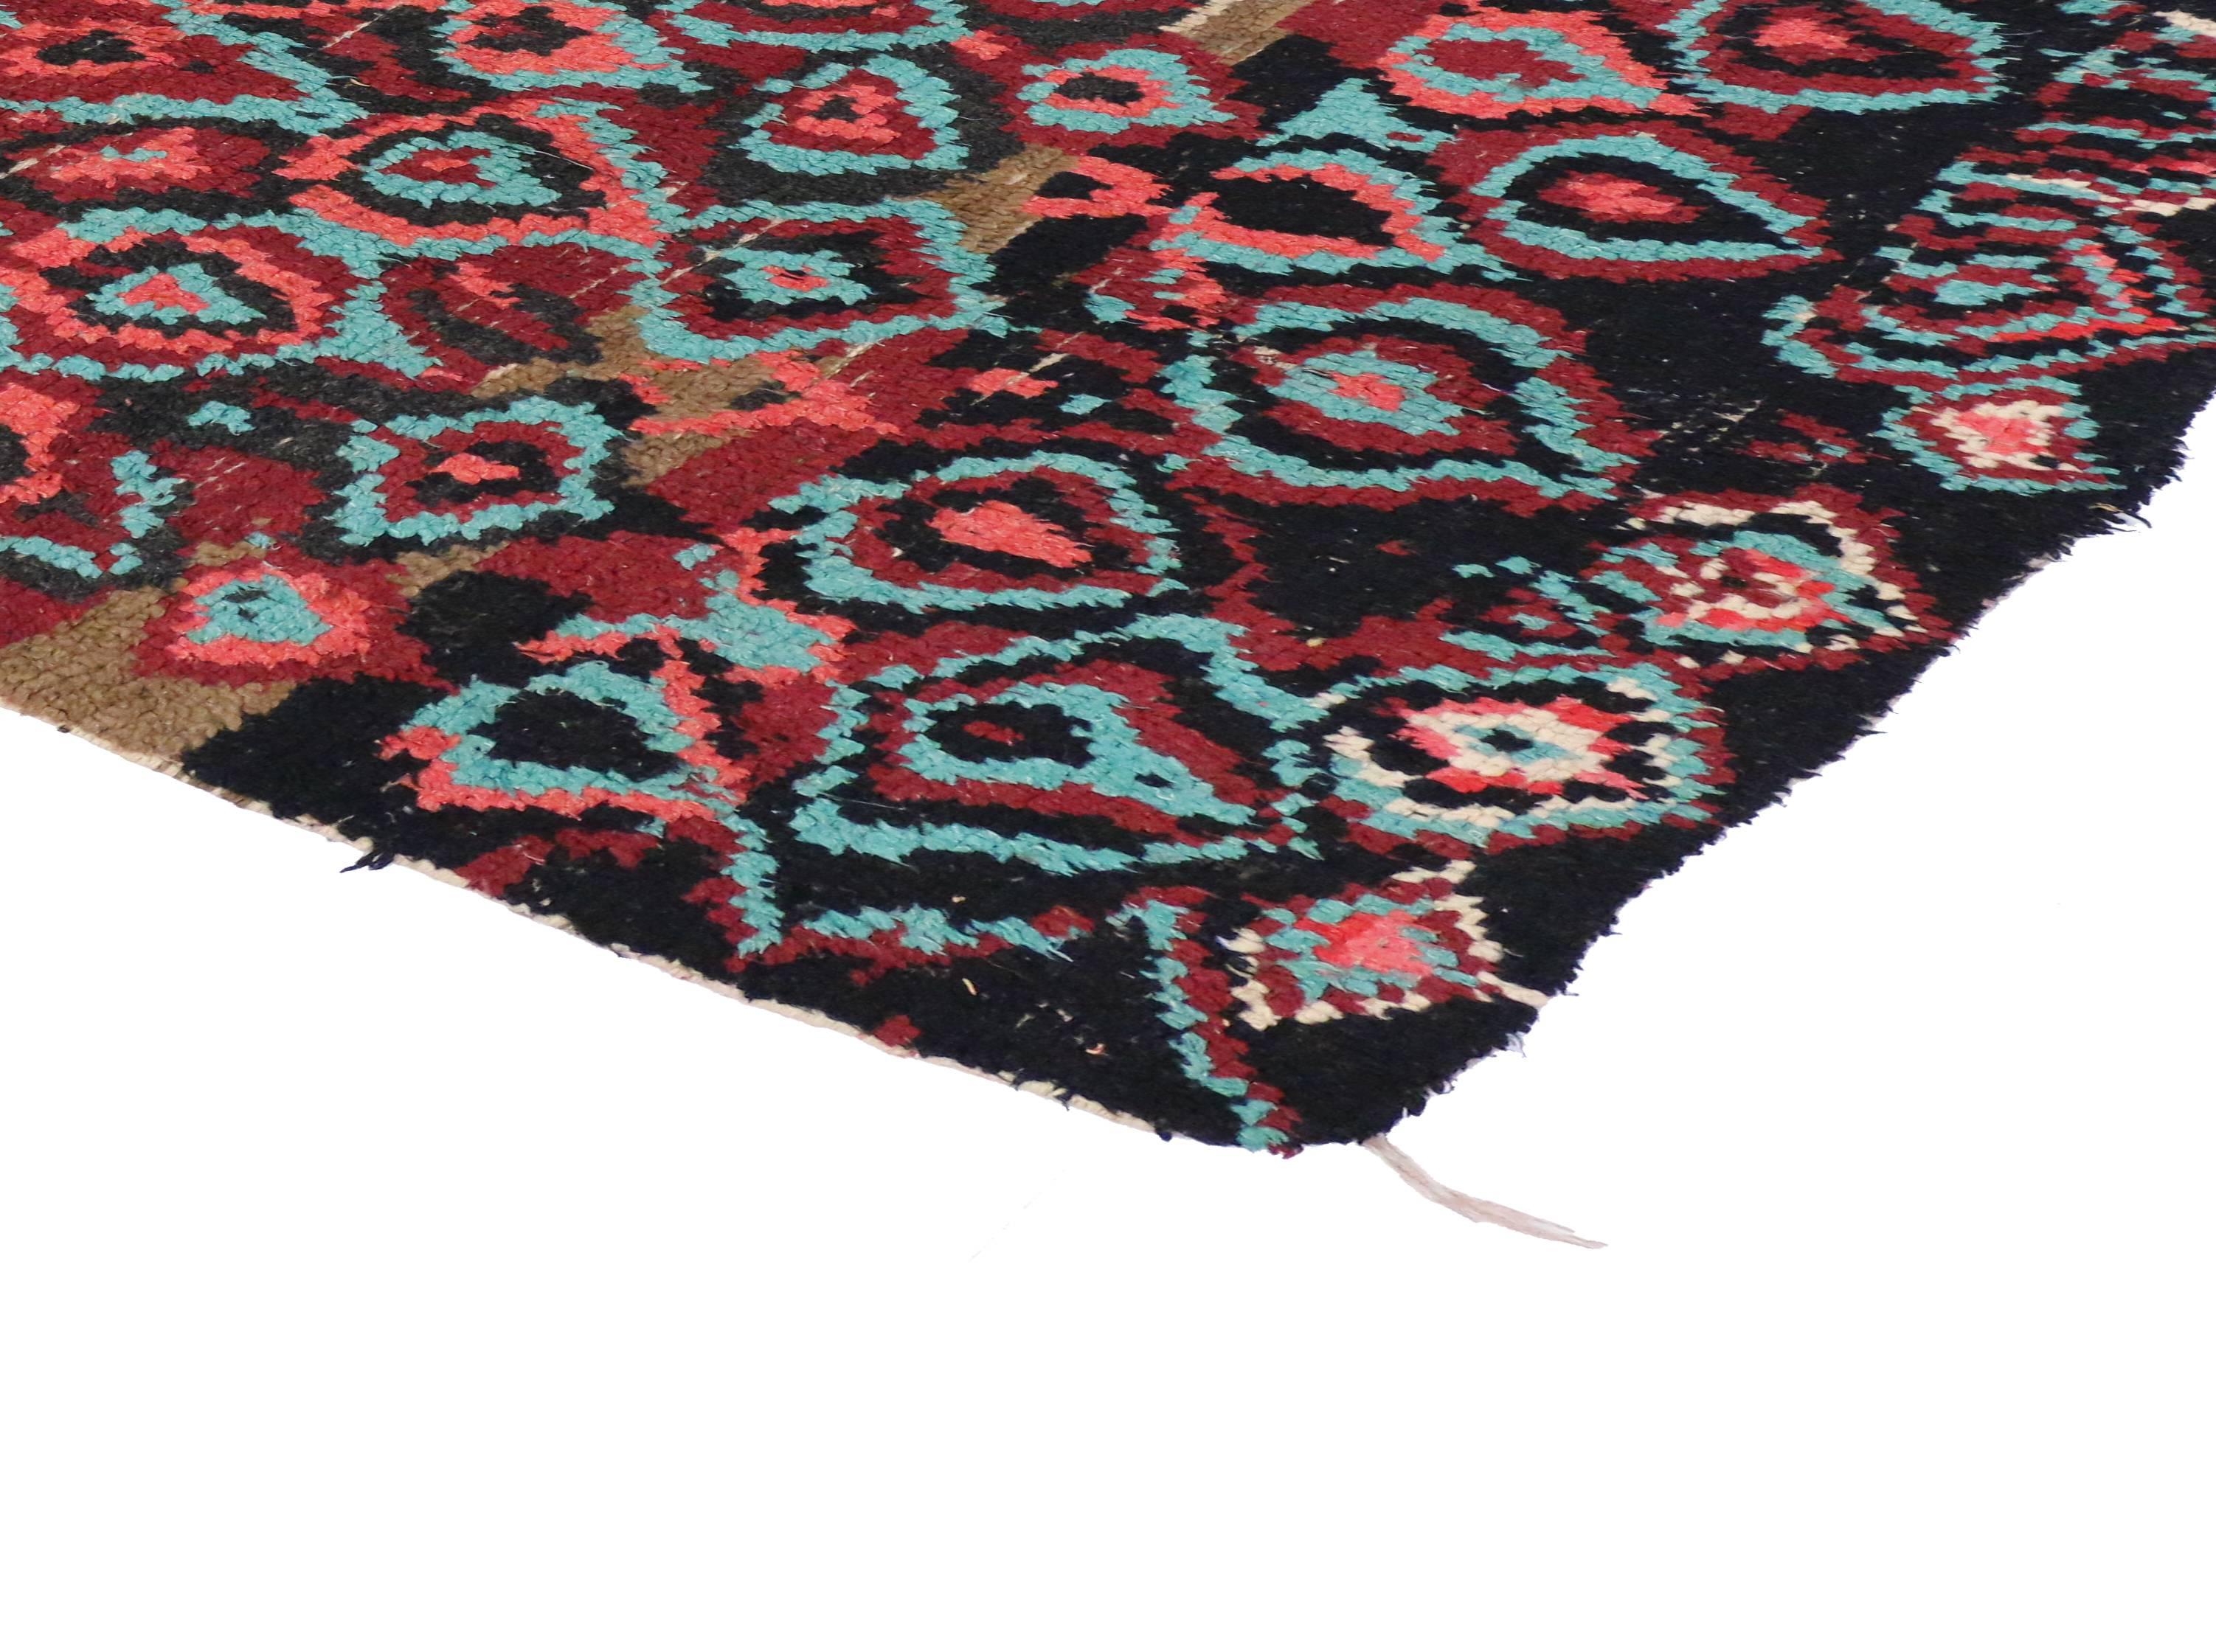 20097 Tapis marocain berbère vintage avec style post-moderne de Memphis 04'02 x 07'08. Ce tapis berbère marocain contemporain en laine nouée à la main présente un design expressif et audacieux, ainsi que des détails et une texture incroyables. Il